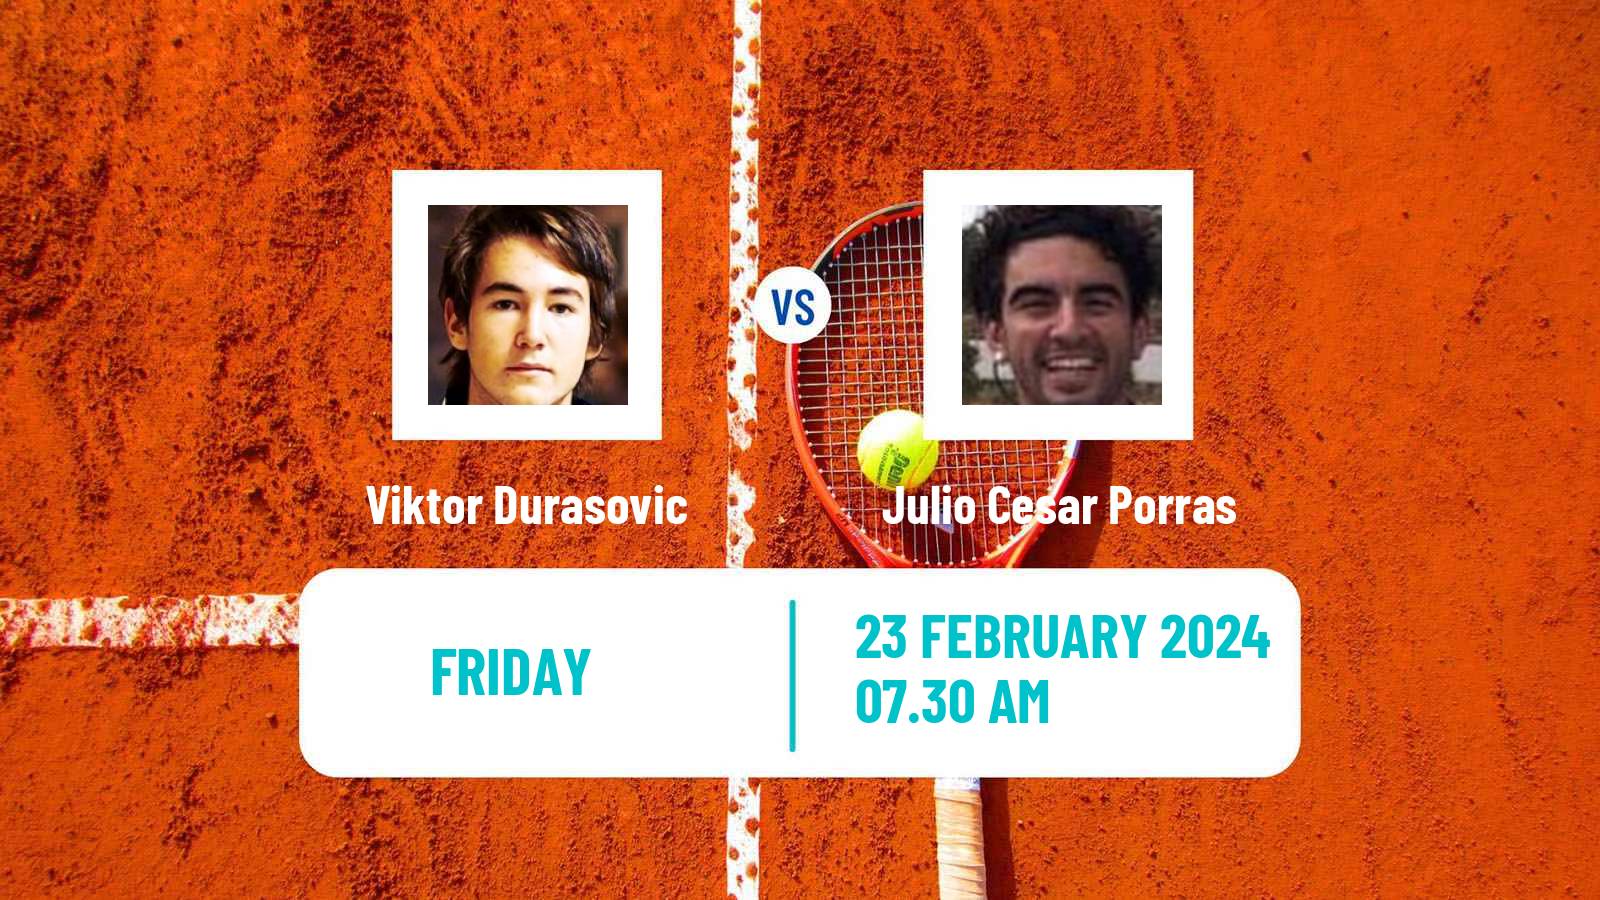 Tennis ITF M25 Vila Real De Santo Antonio 2 Men Viktor Durasovic - Julio Cesar Porras